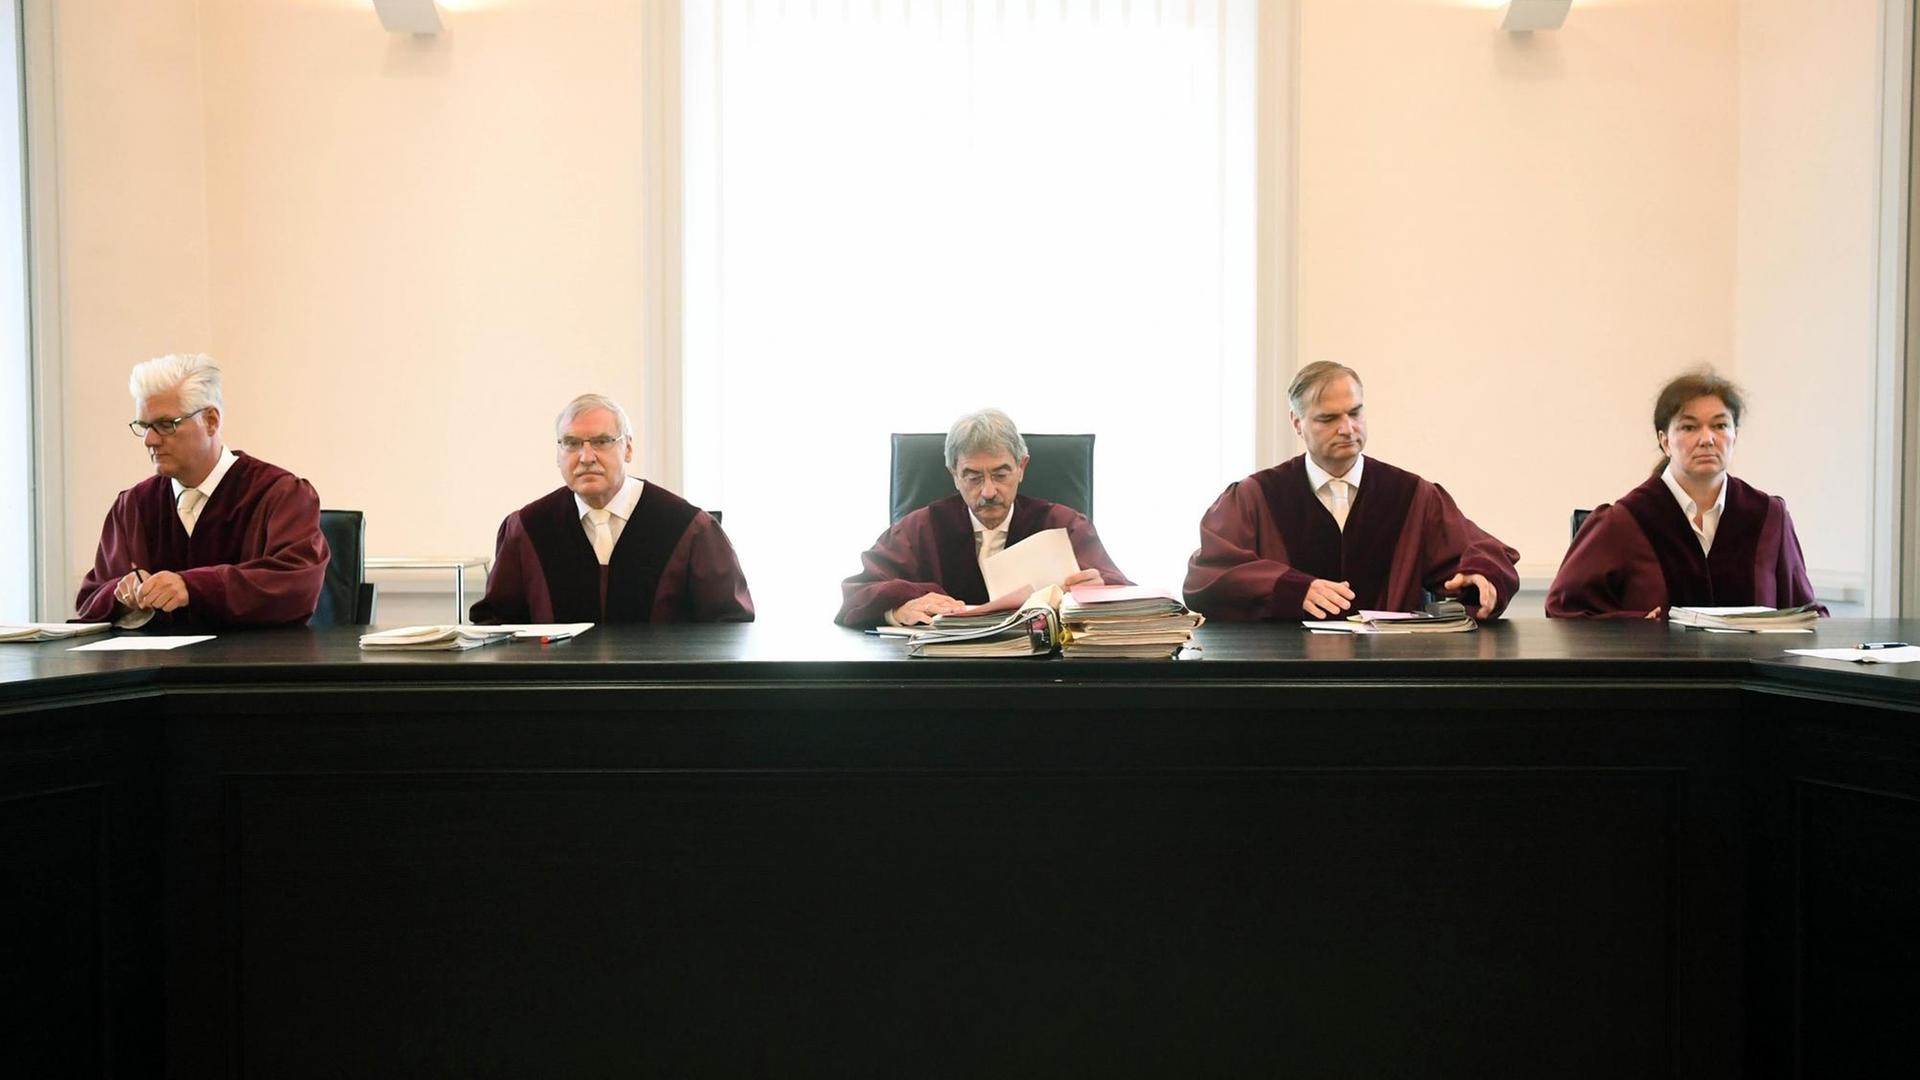 Der Erste Zivilsenat beim Bundesgerichtshof (BGH). Fünf Richter sitzen in Roben nebeneinander.